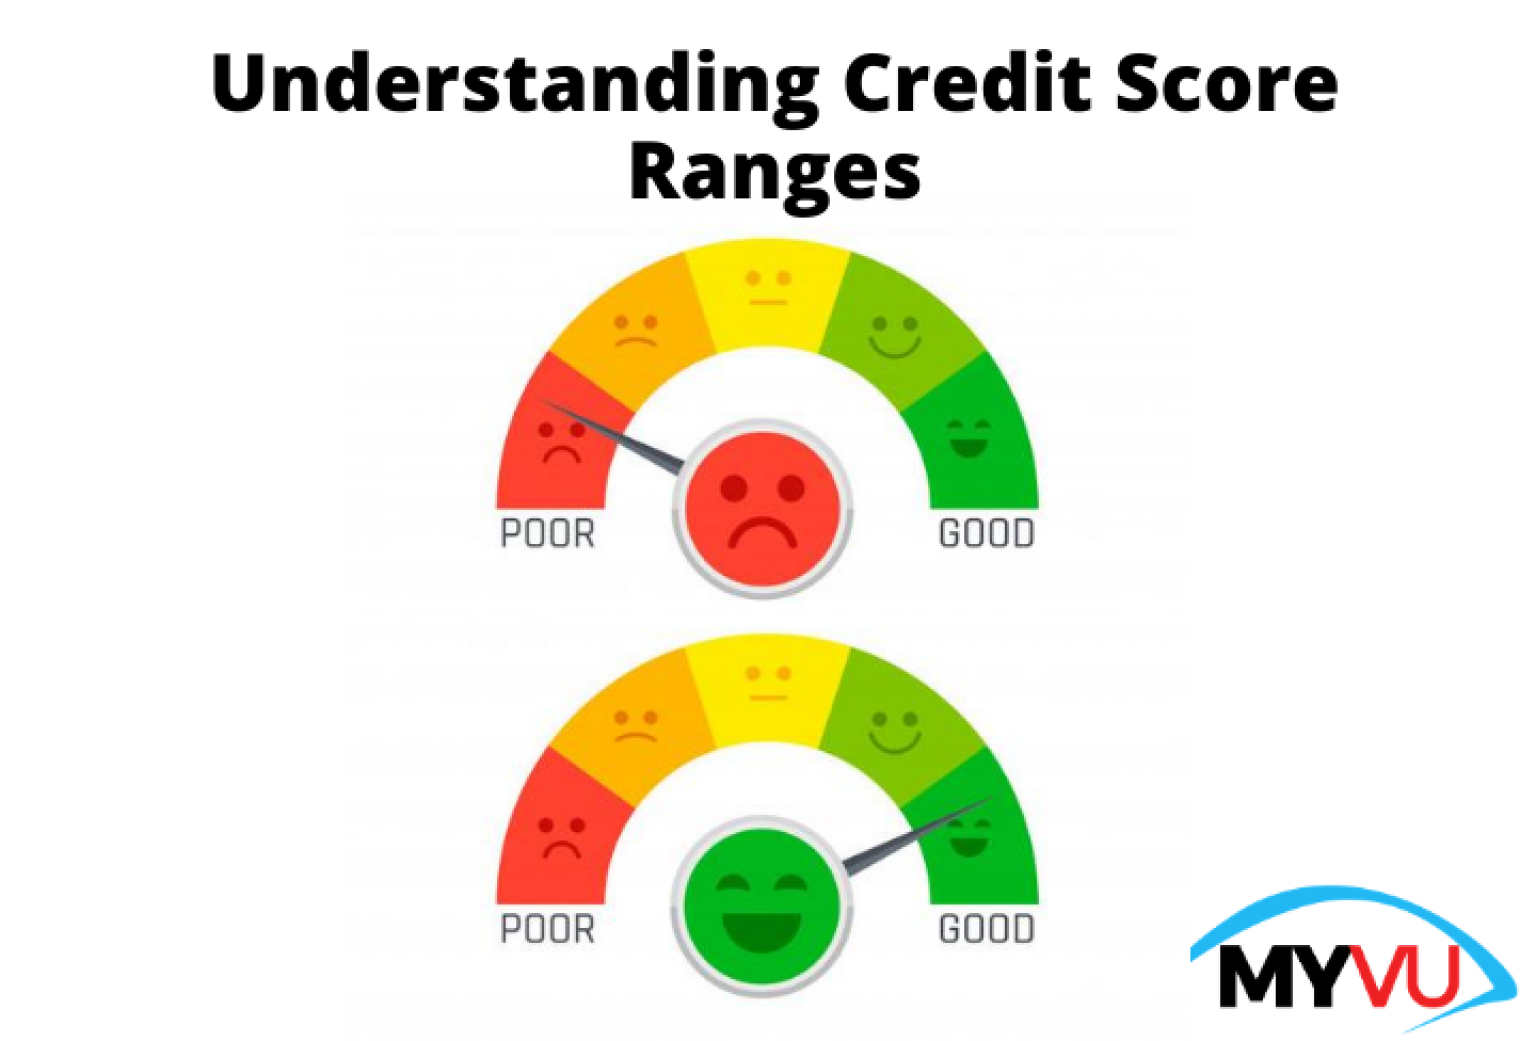 Understanding Credit Score Ranges - MYVU.com